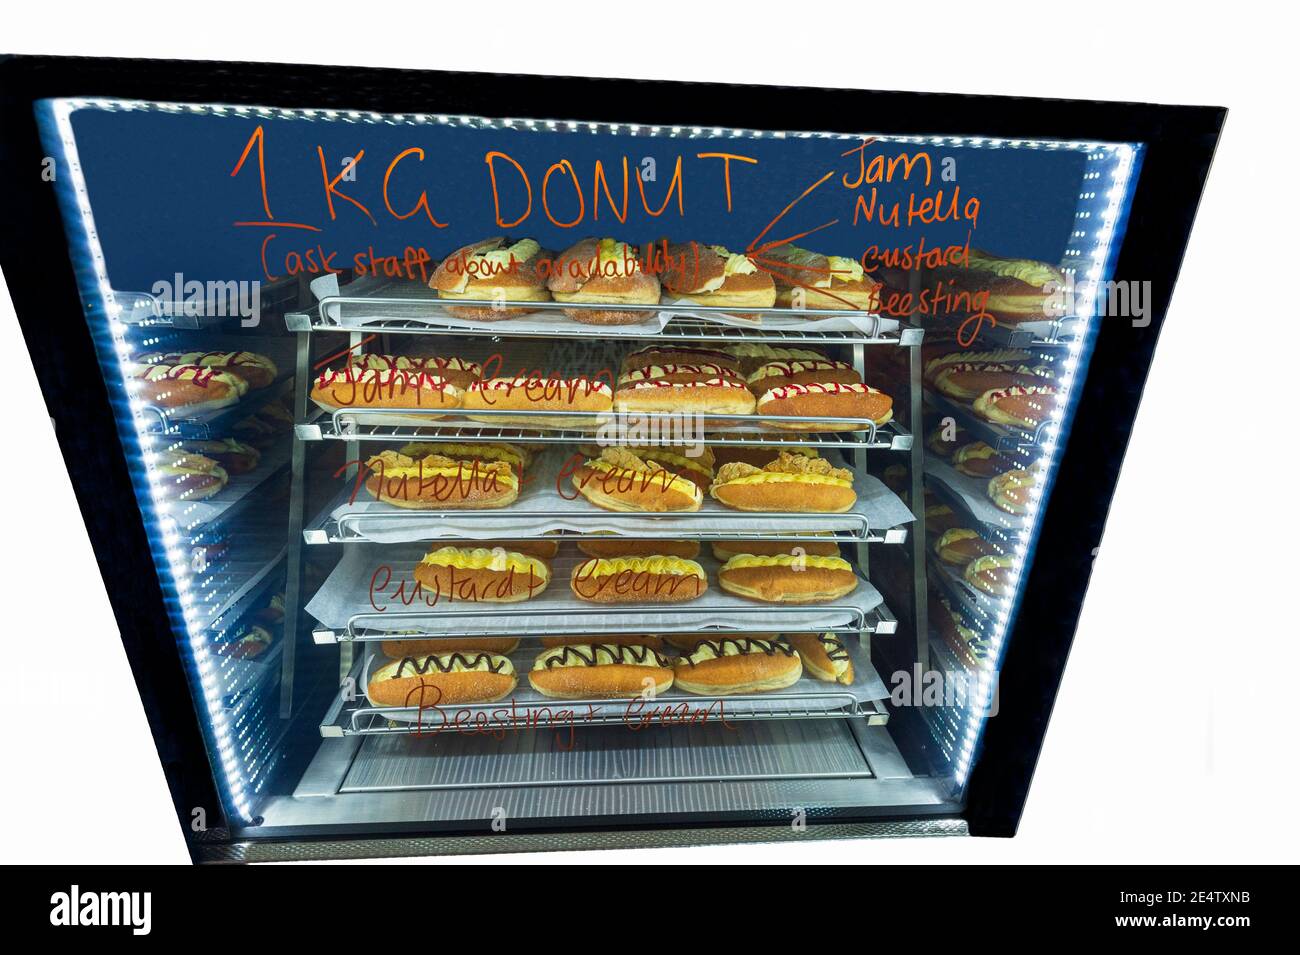 Schrank mit 1 Kilo Donuts für einen Essenswettbewerb, Kenilworth Country Bakery, South East Queensland, QLD, Australien Stockfoto